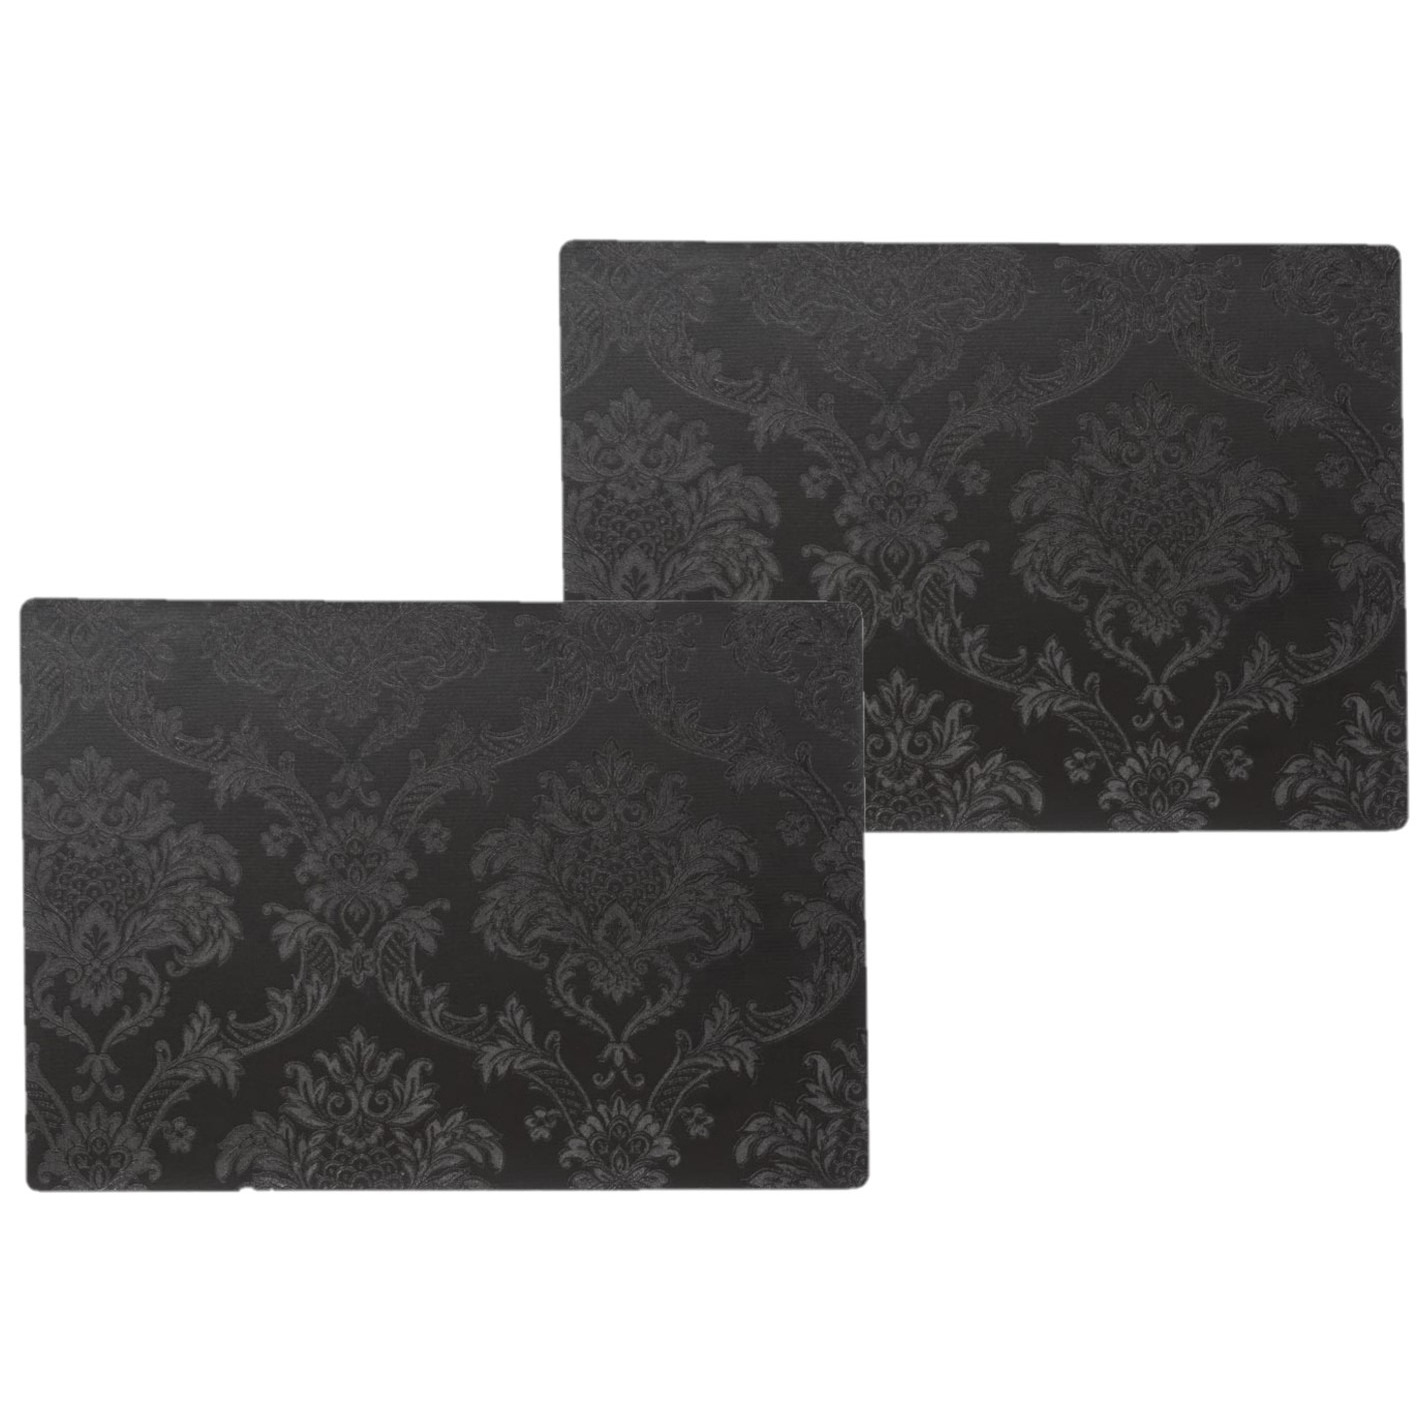 Wicotex 12x stuks stevige luxe Tafel placemats Amatista zwart 30 x 43 cm -